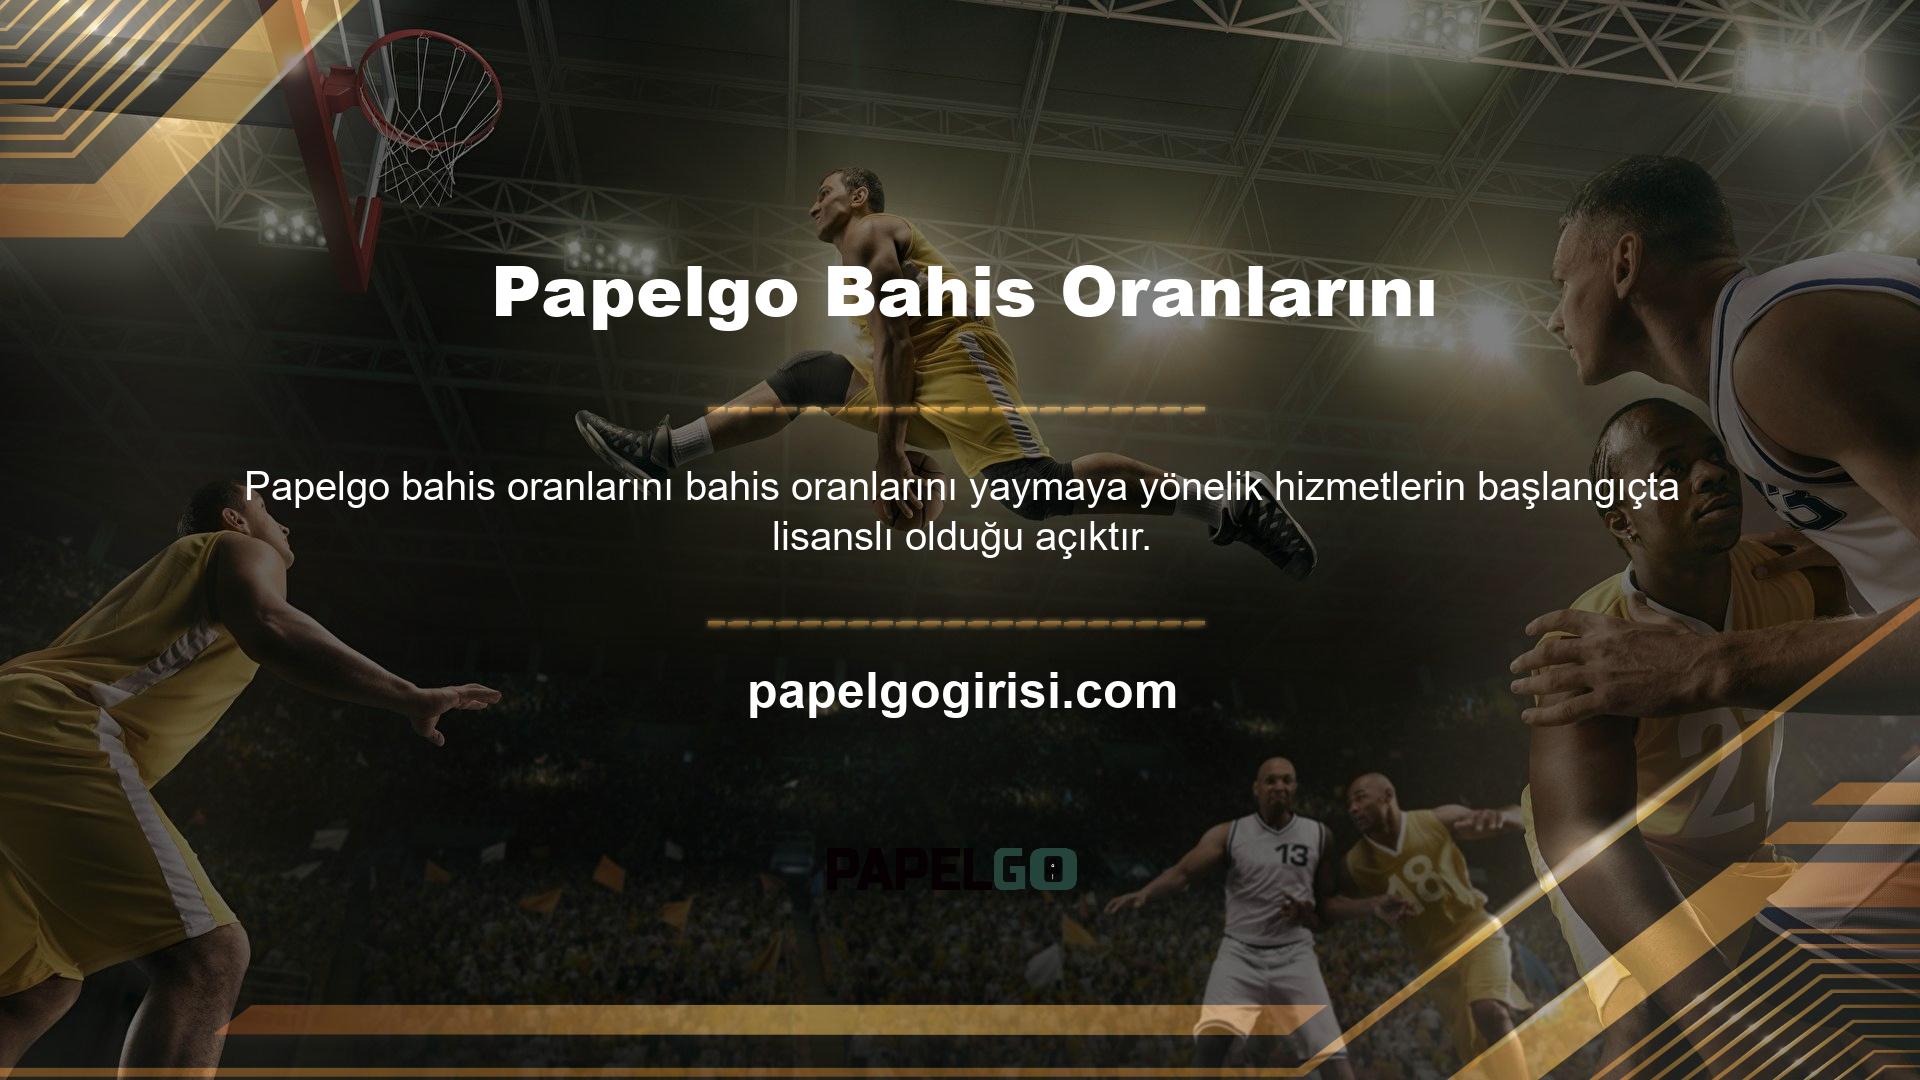 Papelgo casino portalı İngilizce ve Almanca gibi dil gruplarında da Türkçe bahis seçenekleri sunmaktadır